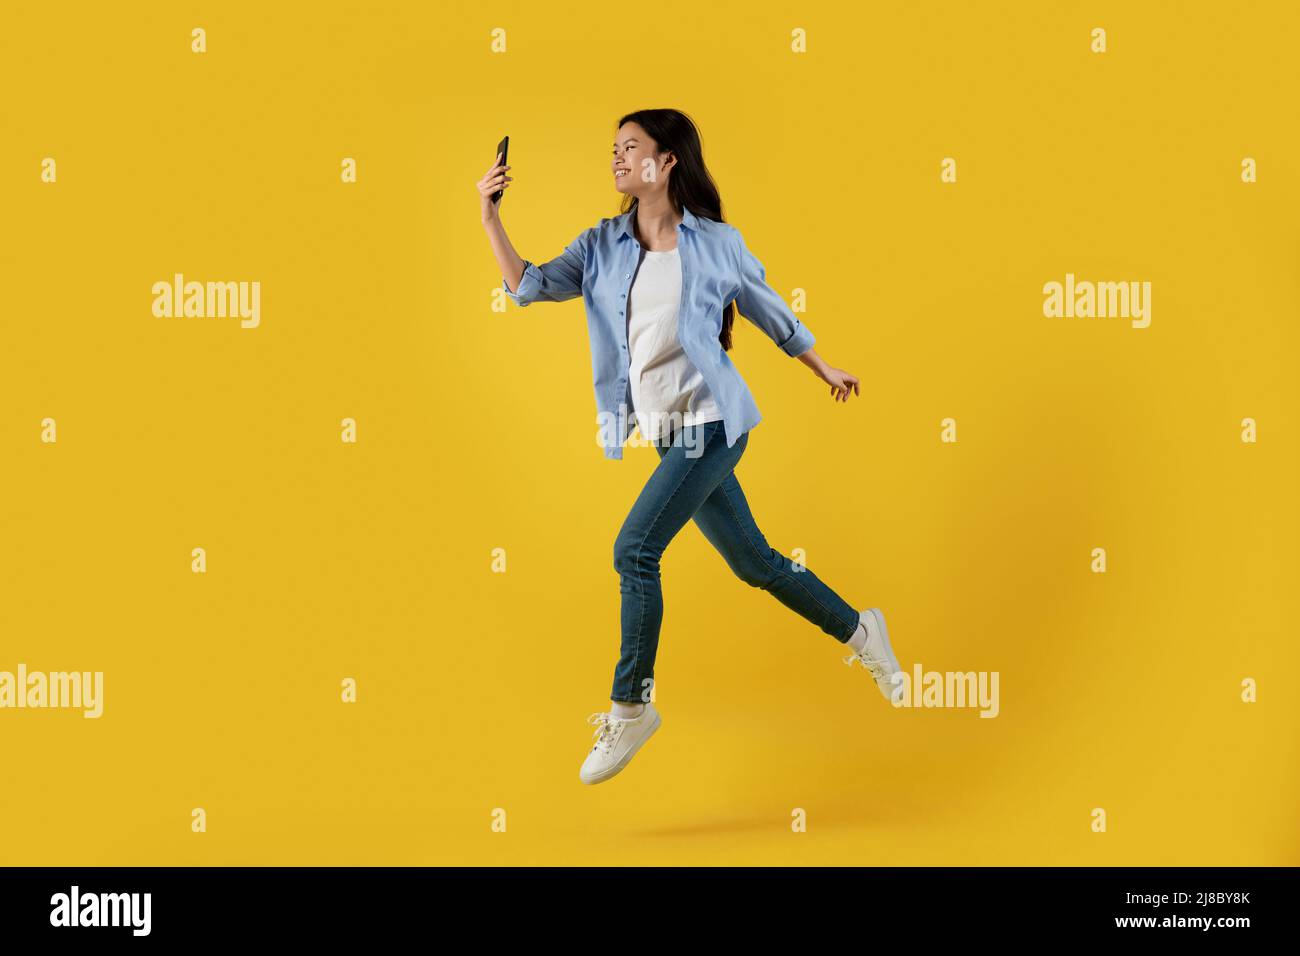 Frohes, tausendjähriges asiatisches Weibchen erstarrte im Luftspringen und betraf das Smartphone, isoliert auf gelbem Hintergrund Stockfoto